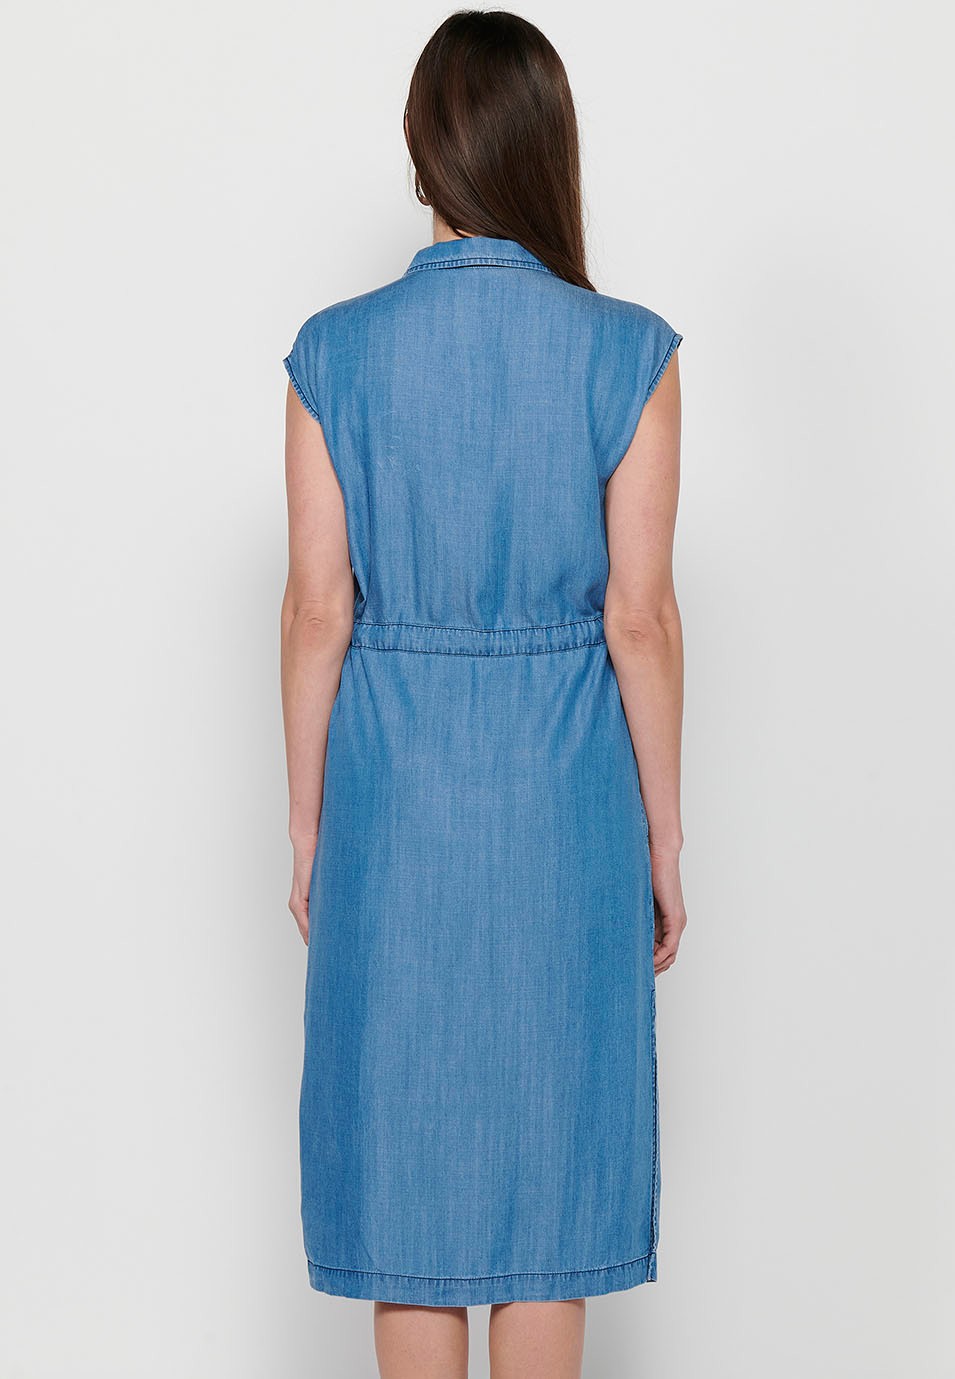 Ärmelloses, langes Damenkleid im Hemdstil mit verstellbarer Taille, Kordelzug und Knopfverschluss vorne in Blau 3